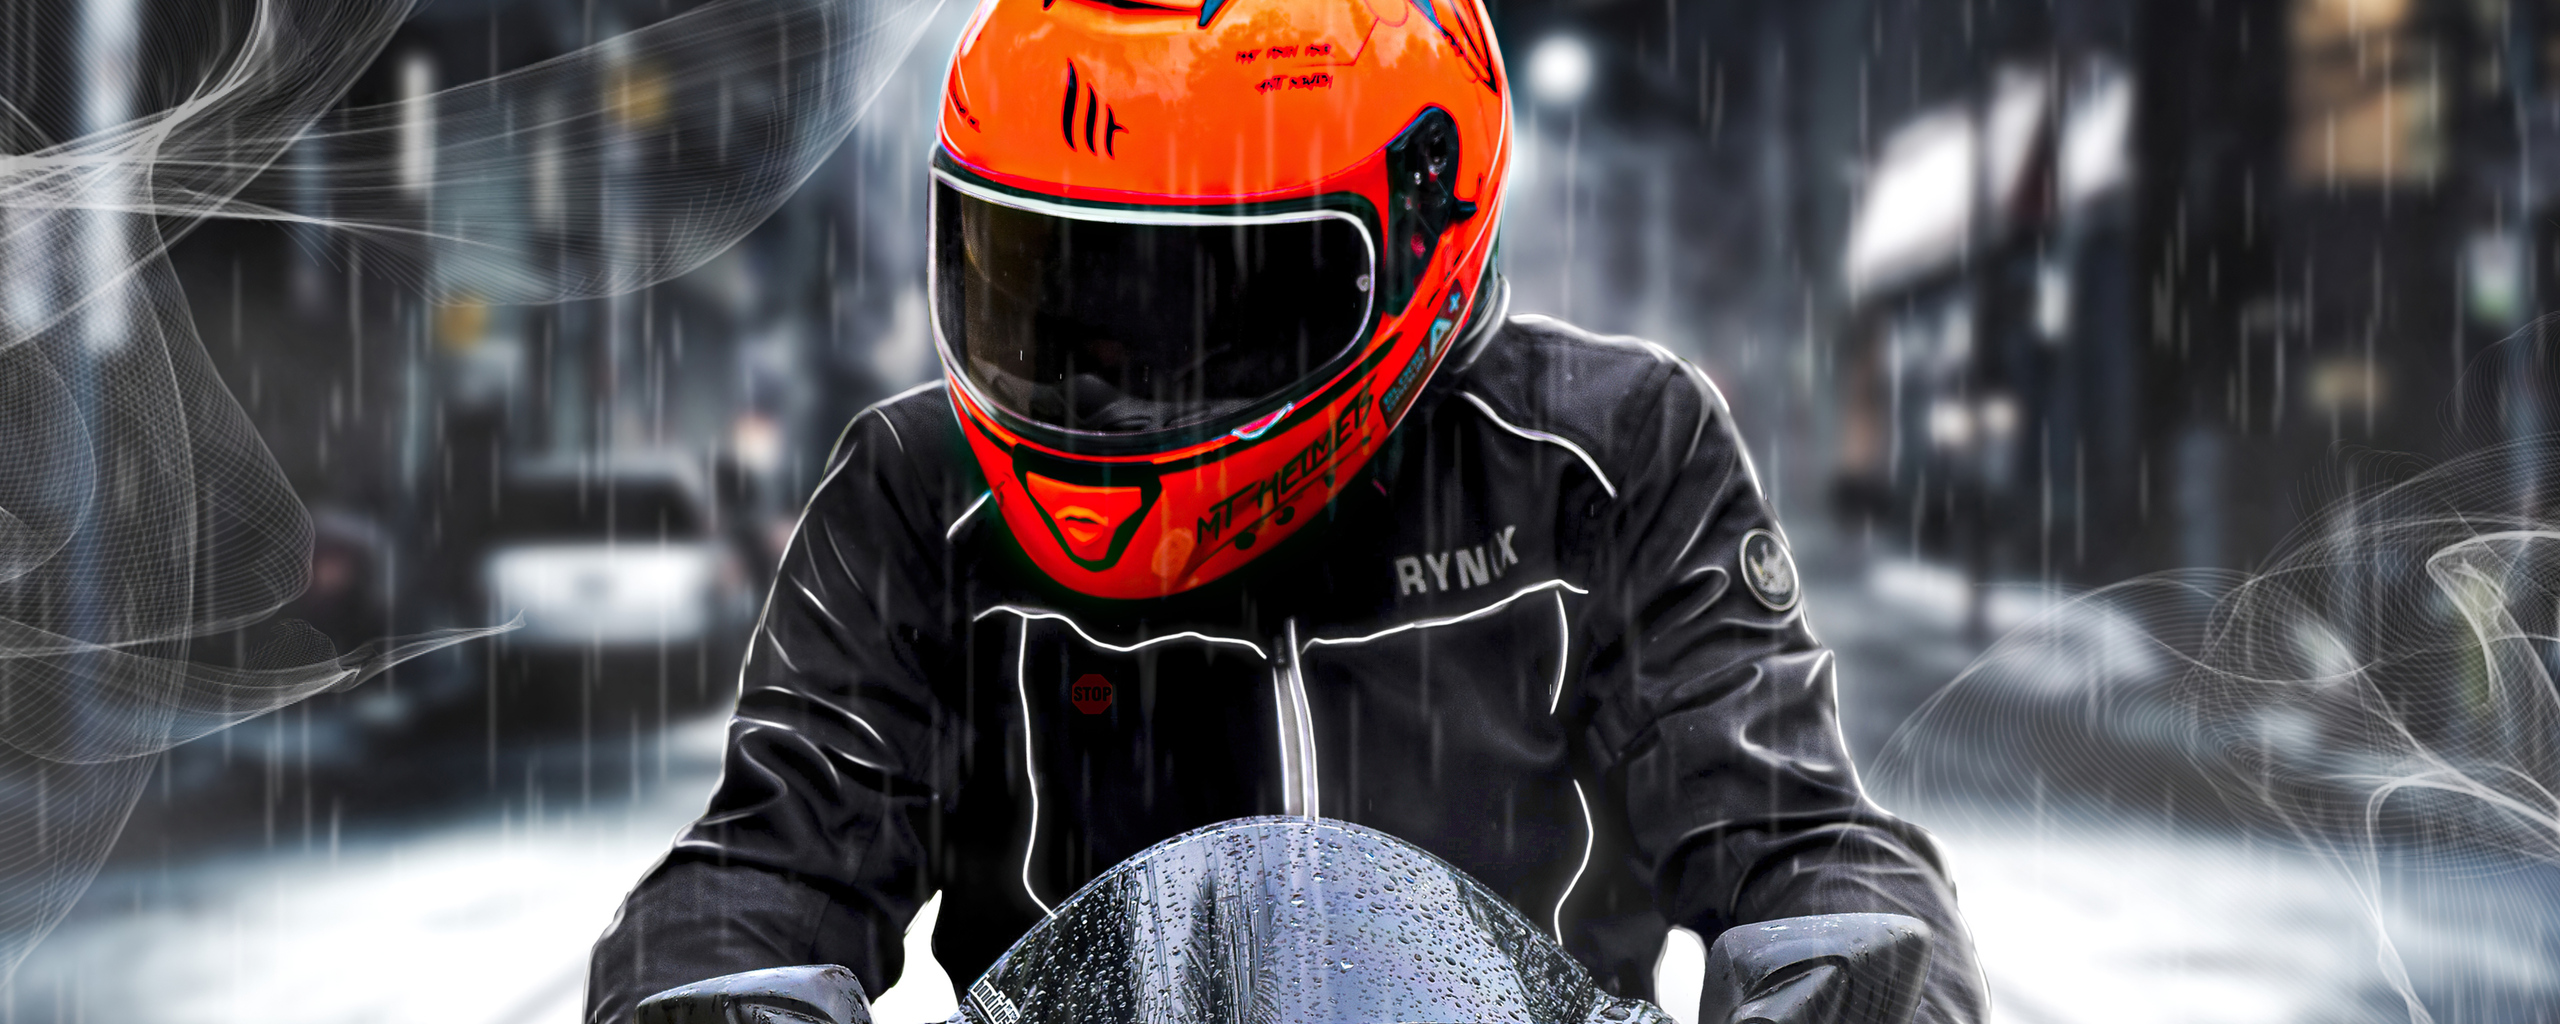 orange-helmet-biker-4k-n1.jpg